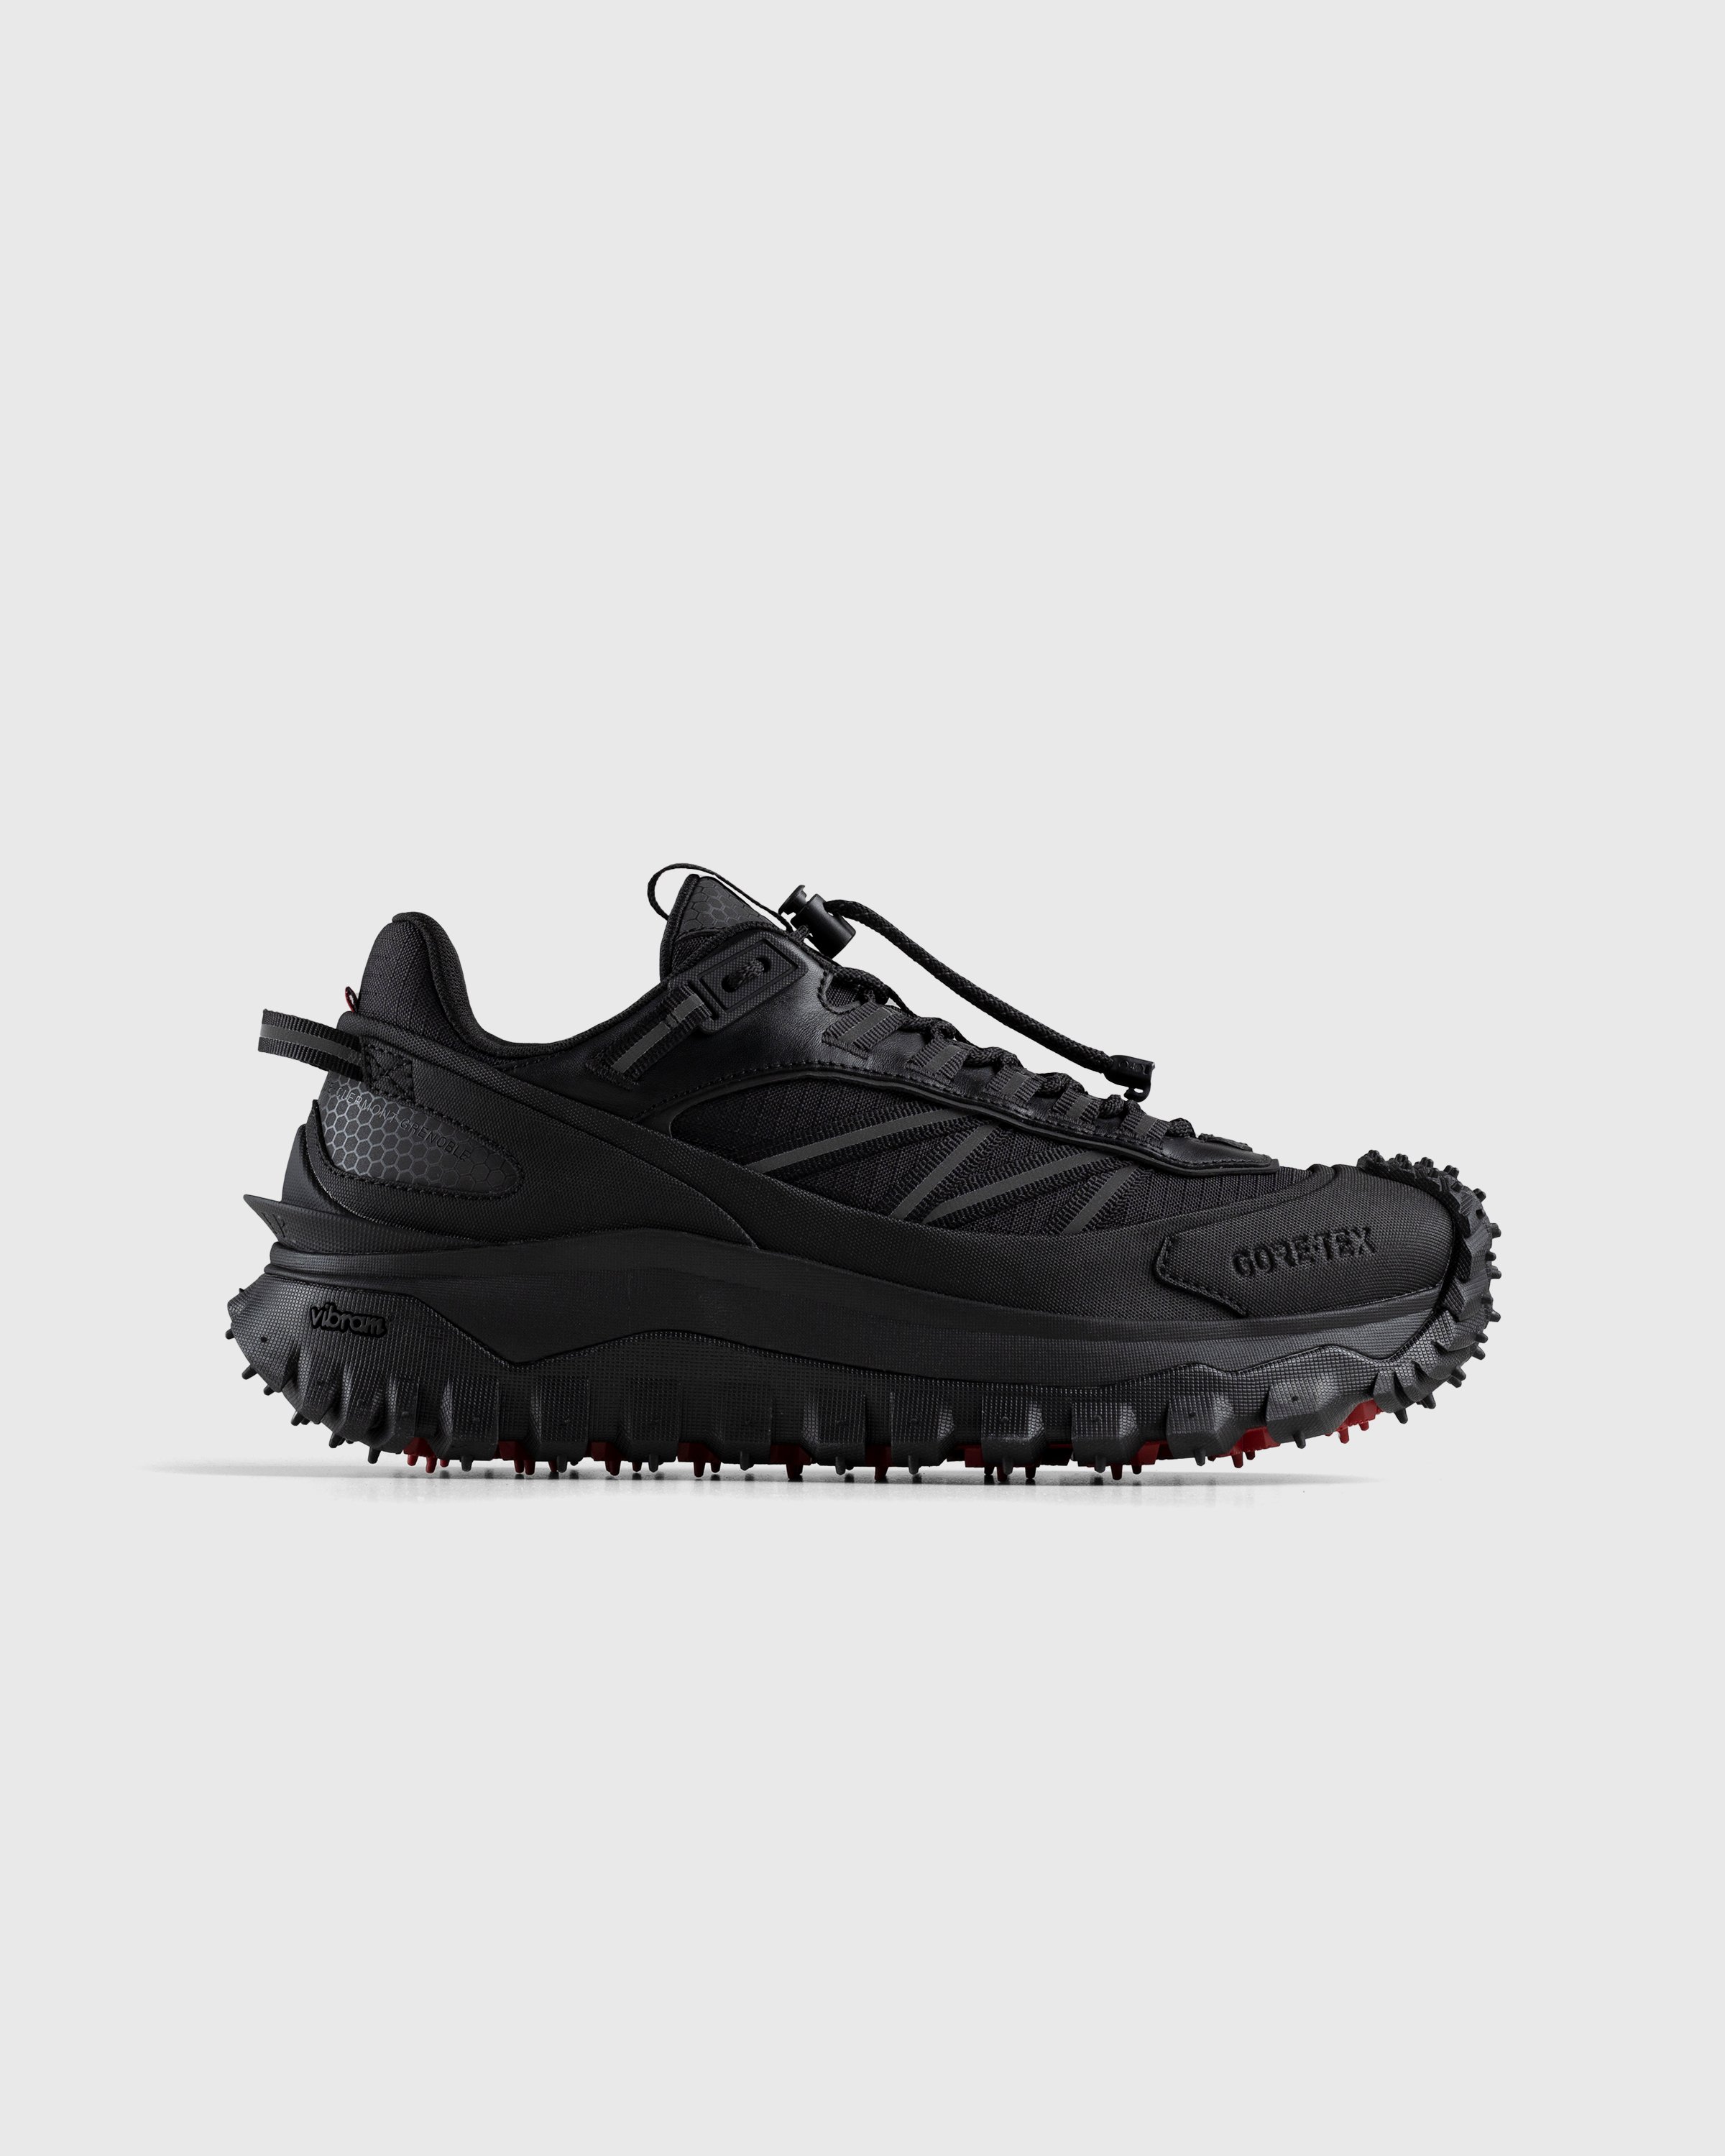 Moncler - Trailgrip GTX Sneakers Black - Footwear - Black - Image 1